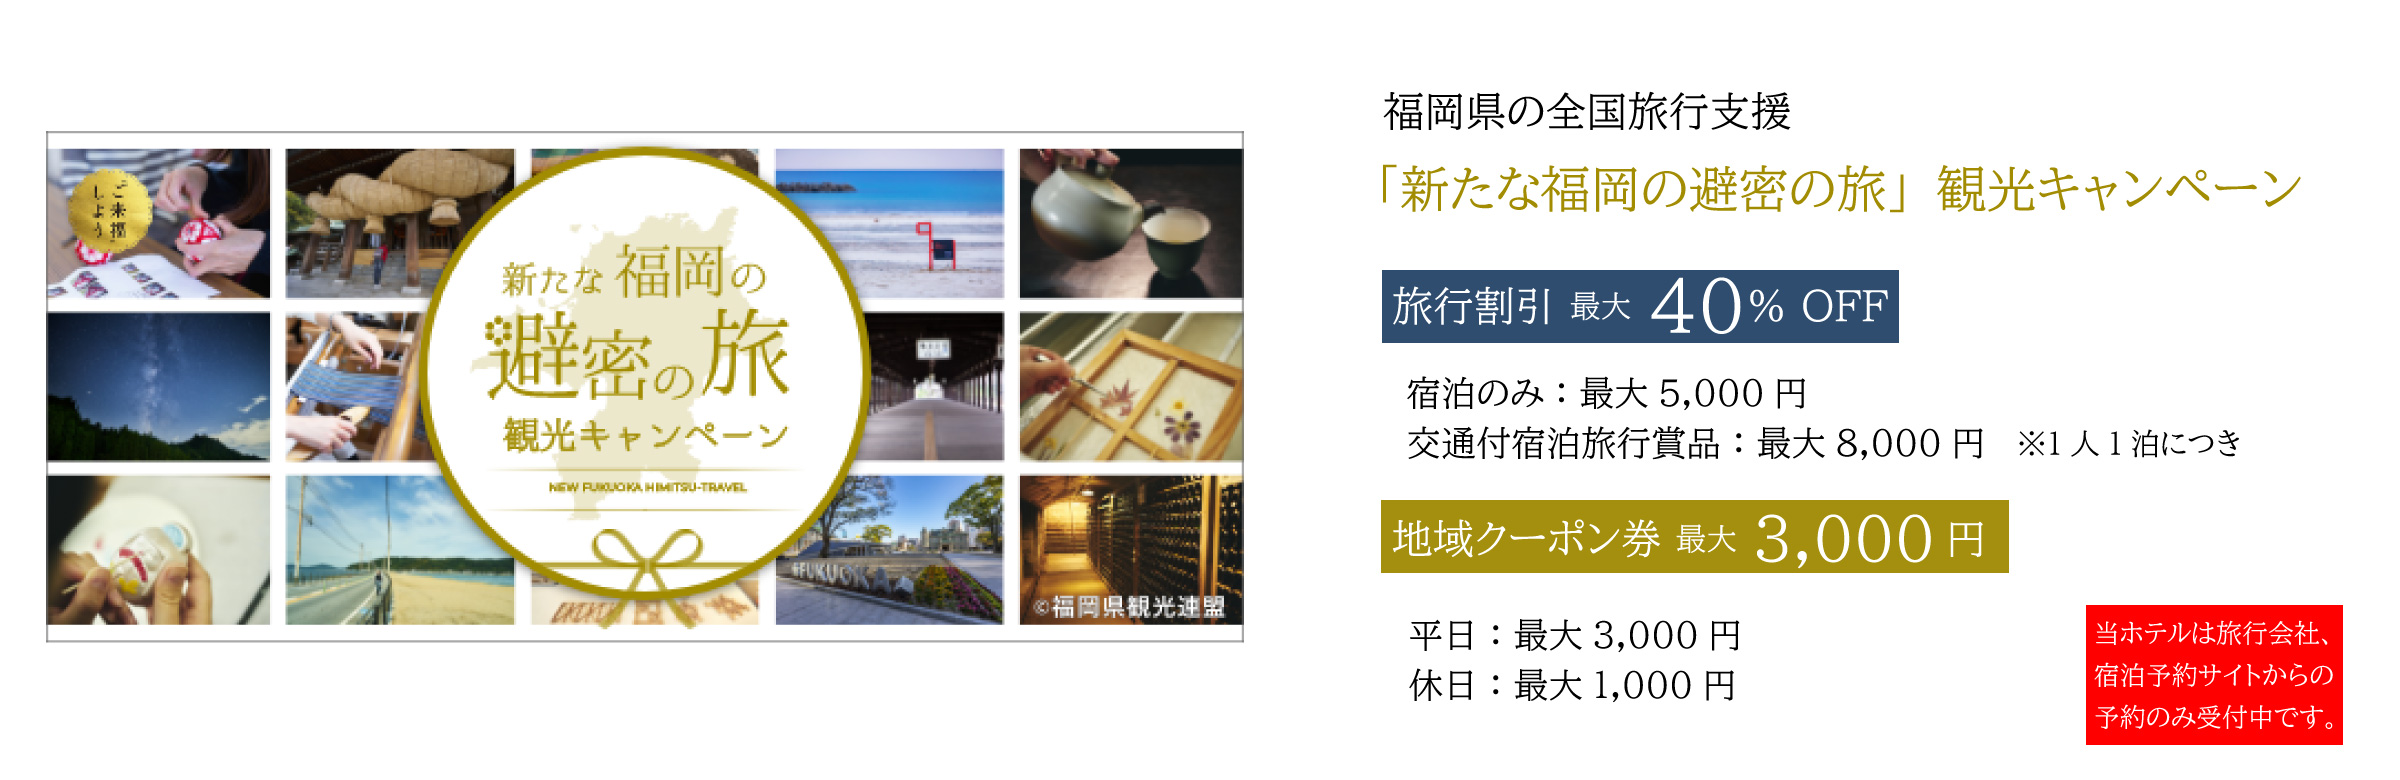 全国旅行支援「新たな福岡の避密の旅」 観光キャンペーン利用について